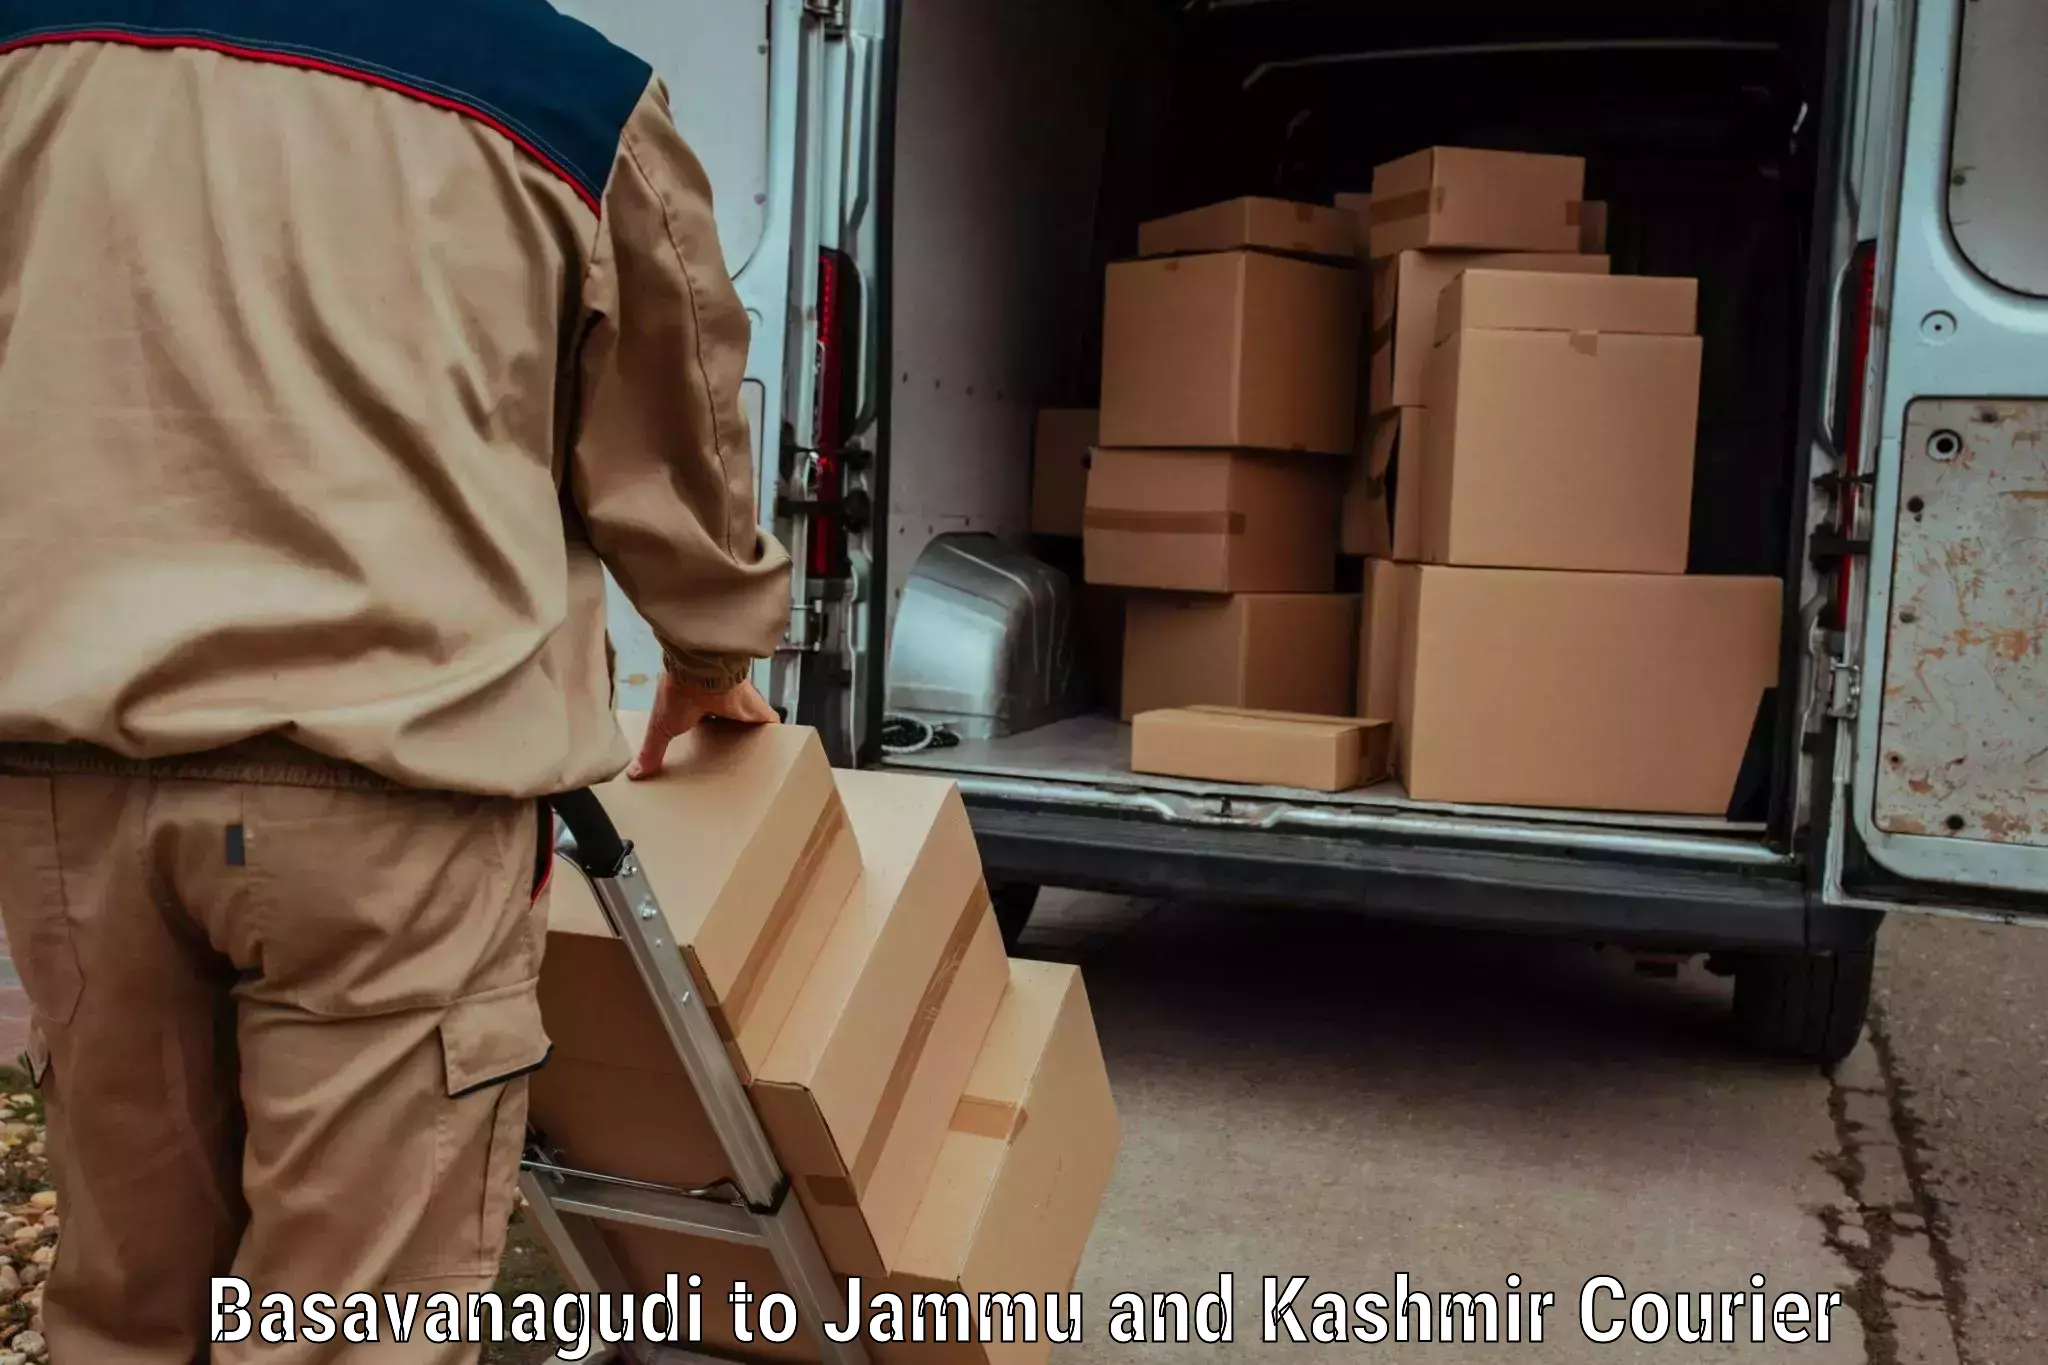 Courier service innovation in Basavanagudi to Doda